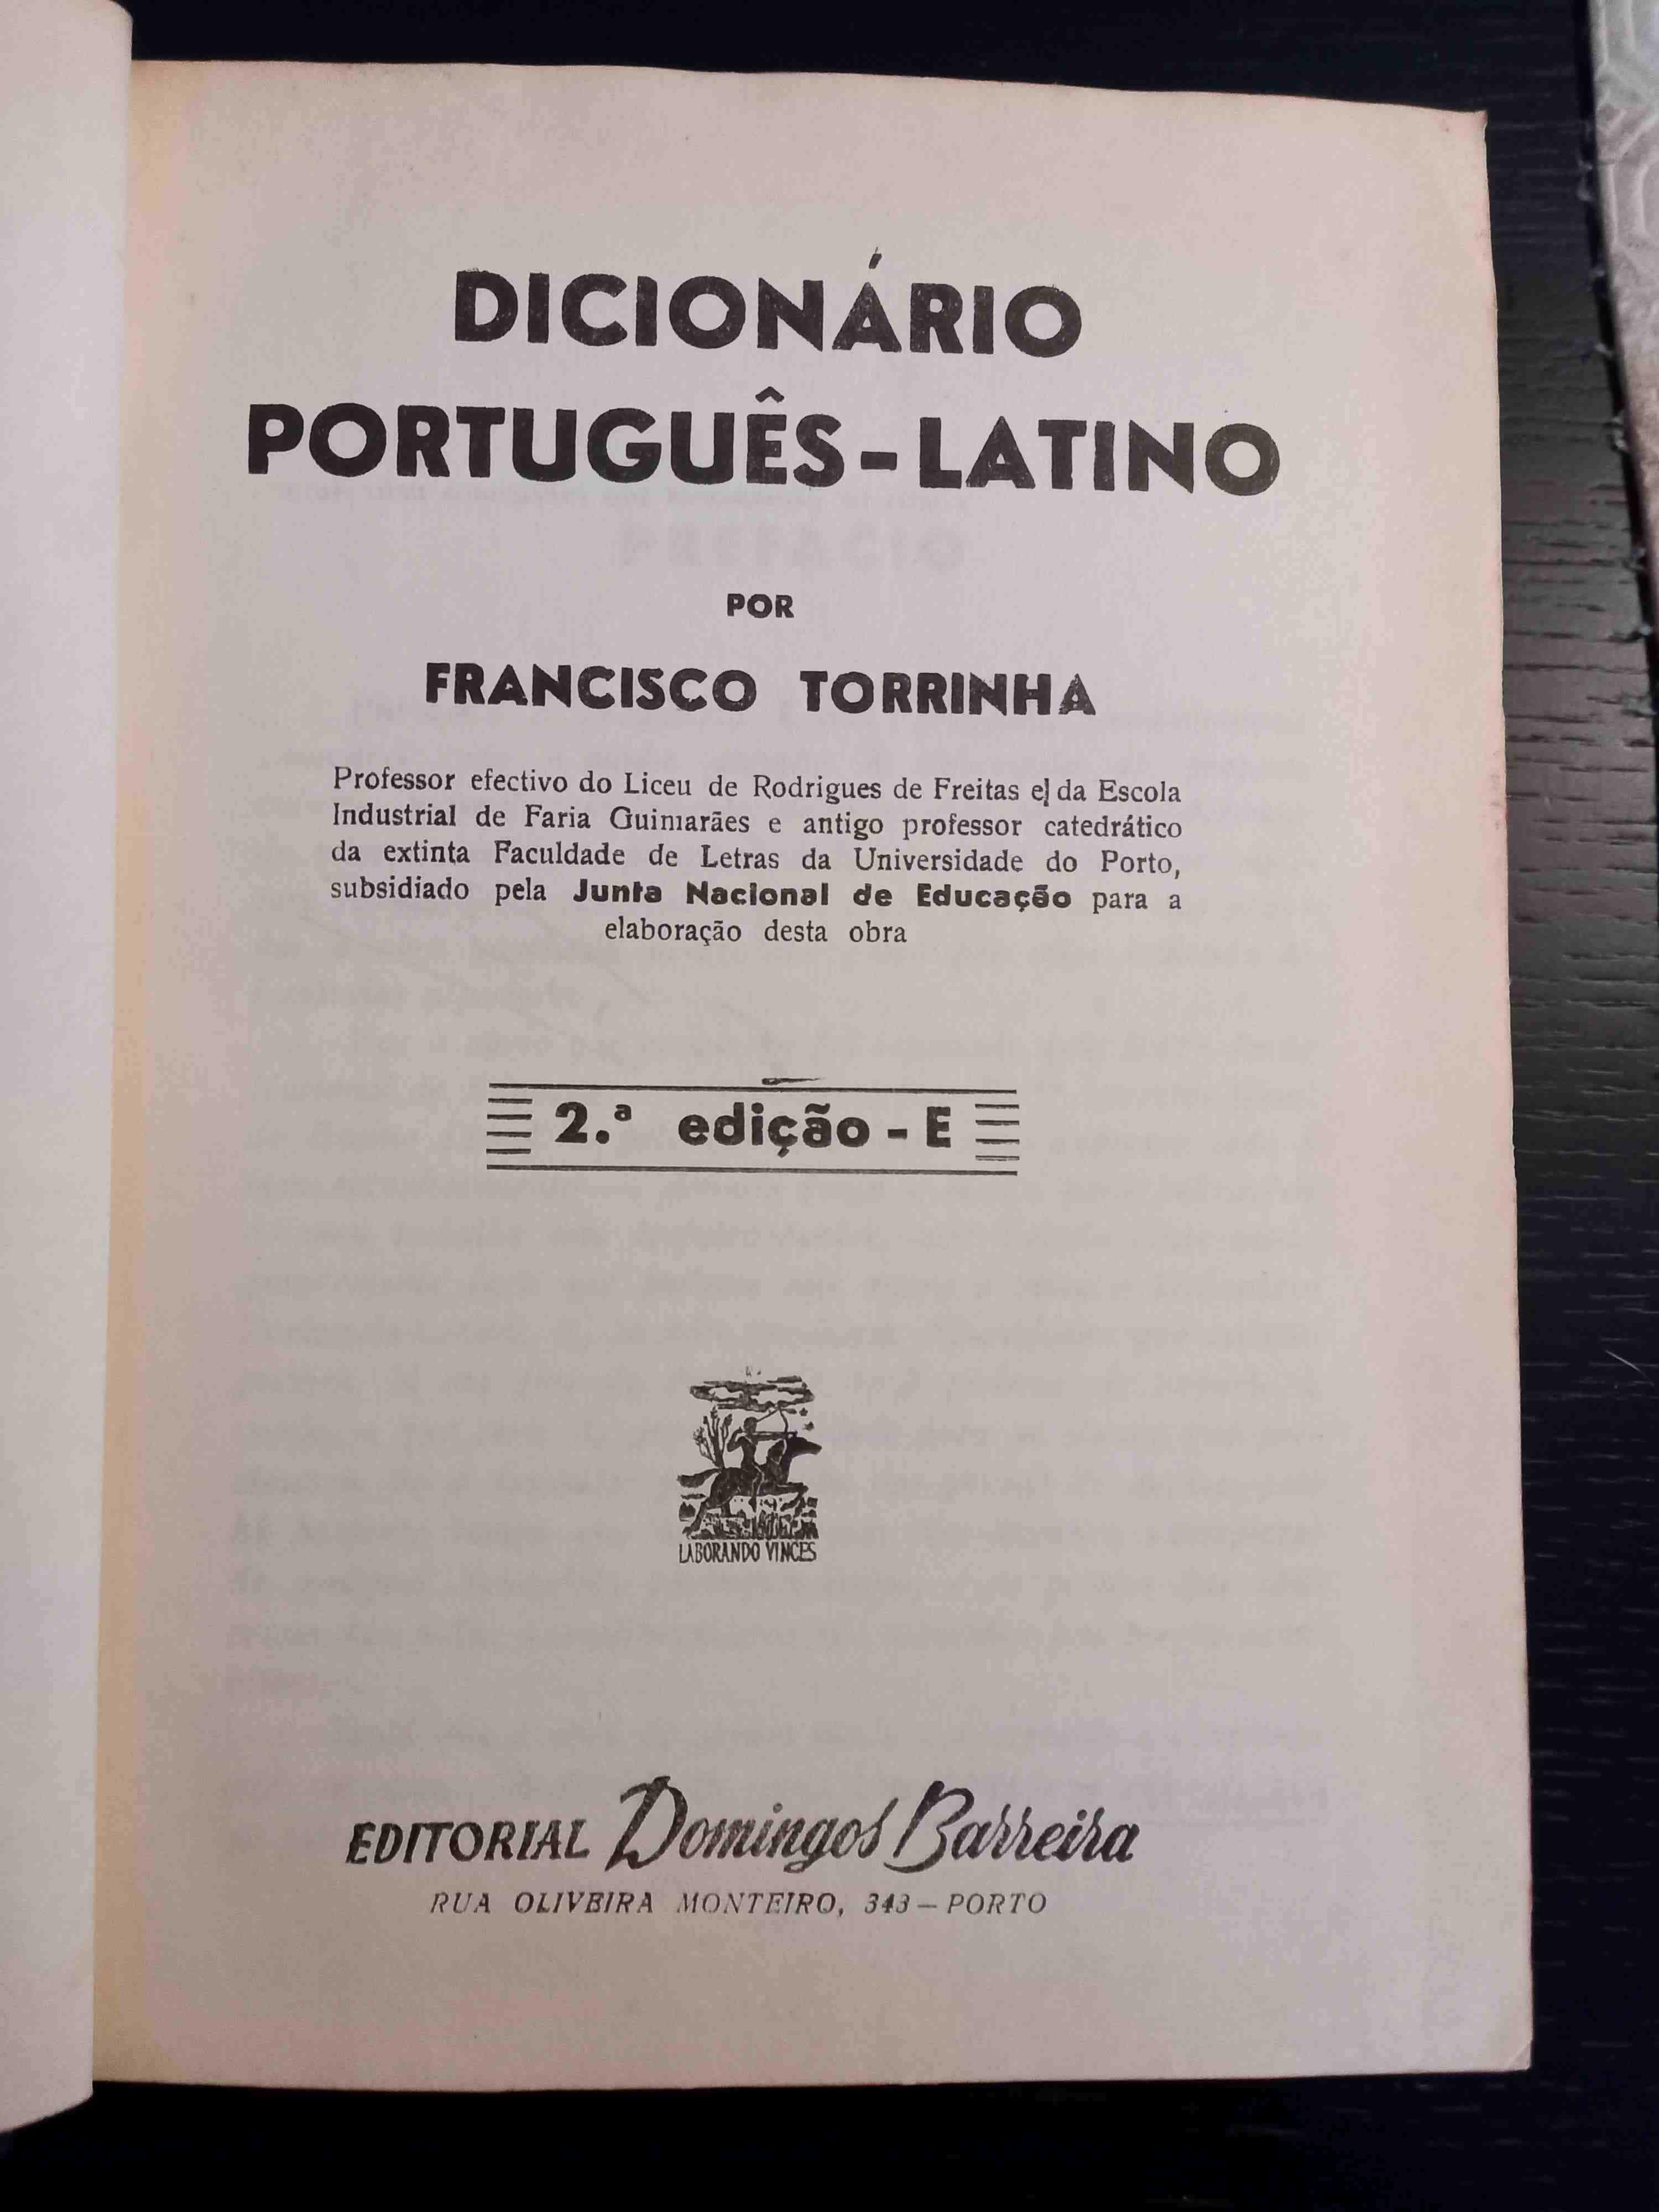 Dicionário Português-Latino de Francisco Torrinha